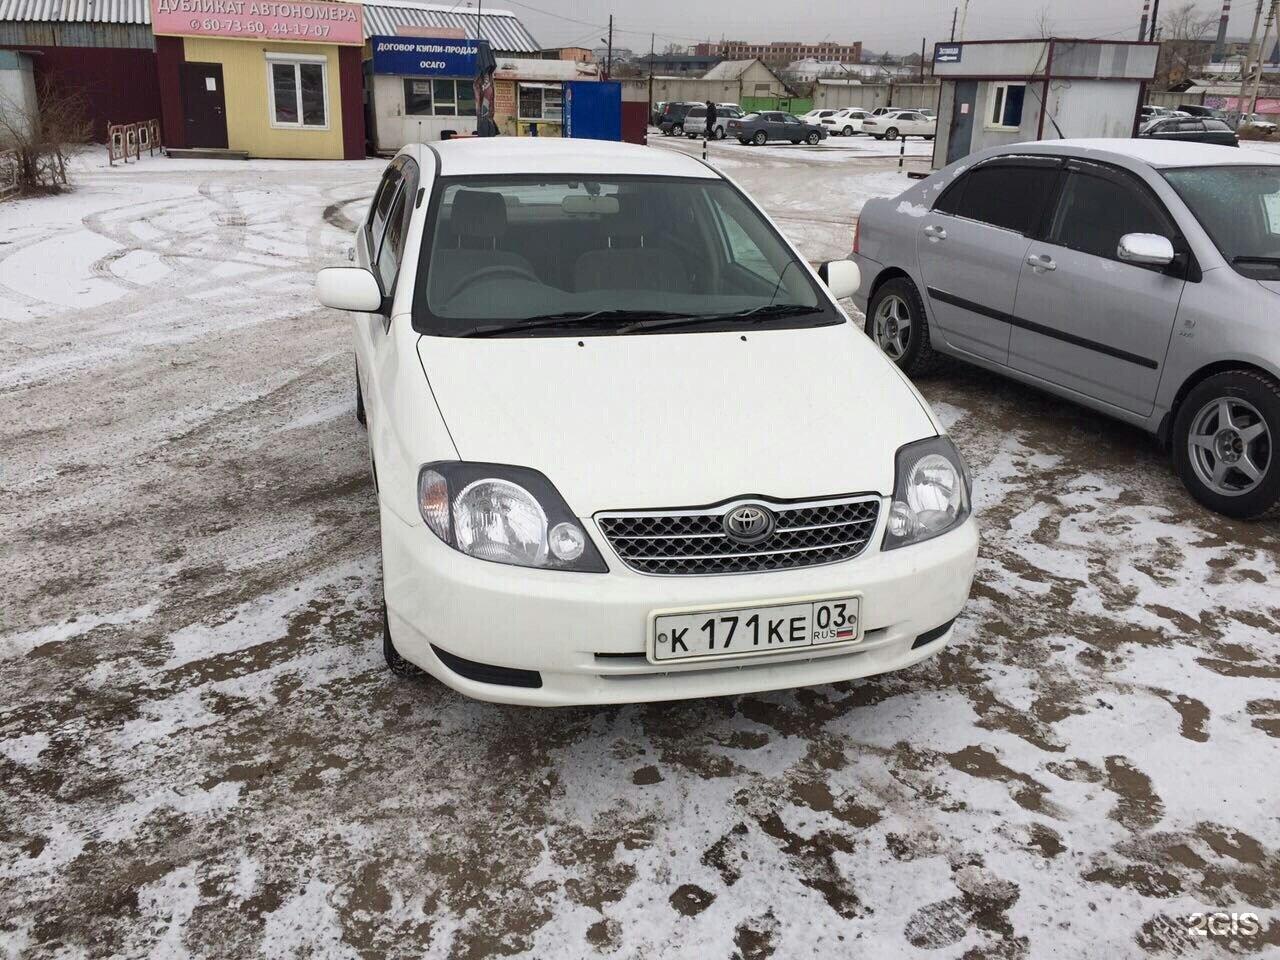 Цены автомобилей улан удэ. Улан-Удэ машины. Престиж авто Улан-Удэ. Avtovykup-Samara компания.